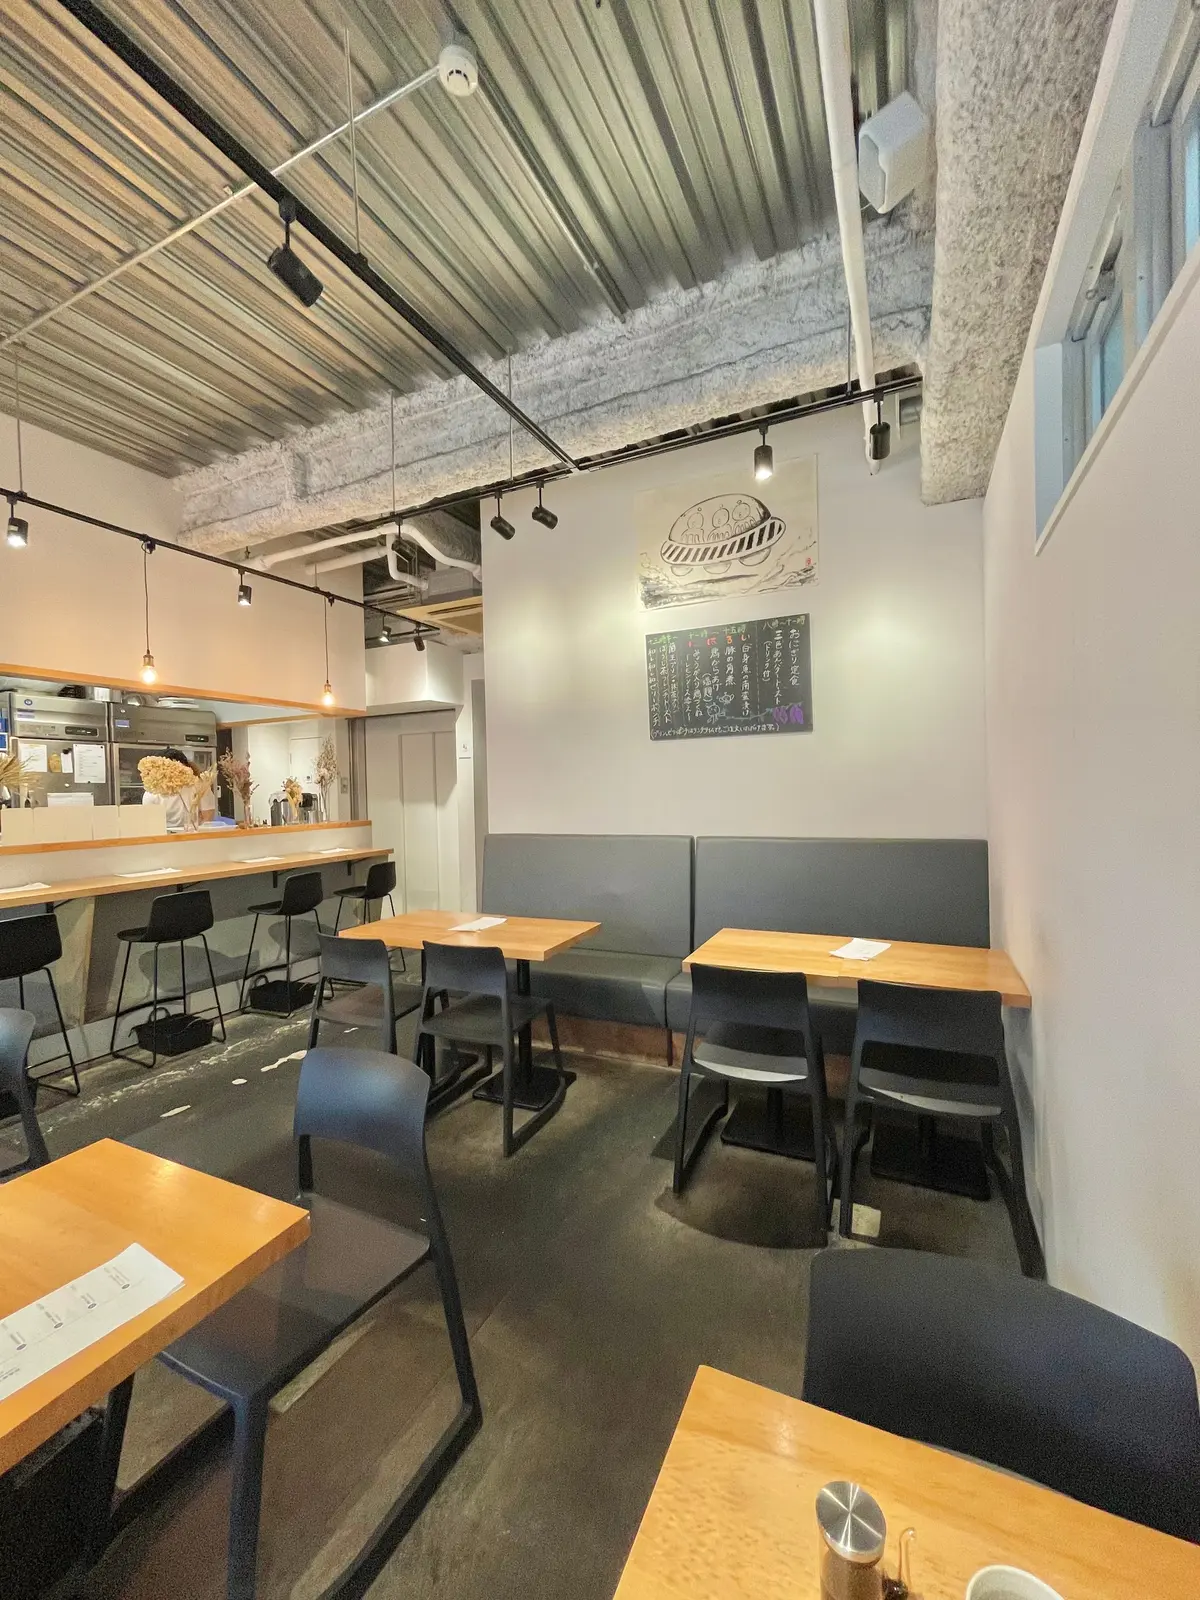 「パンとエスプレッソと」の系列店、大阪 本町で朝から行列ができるカフェ「和レ和レ和」の「おにぎり定食」